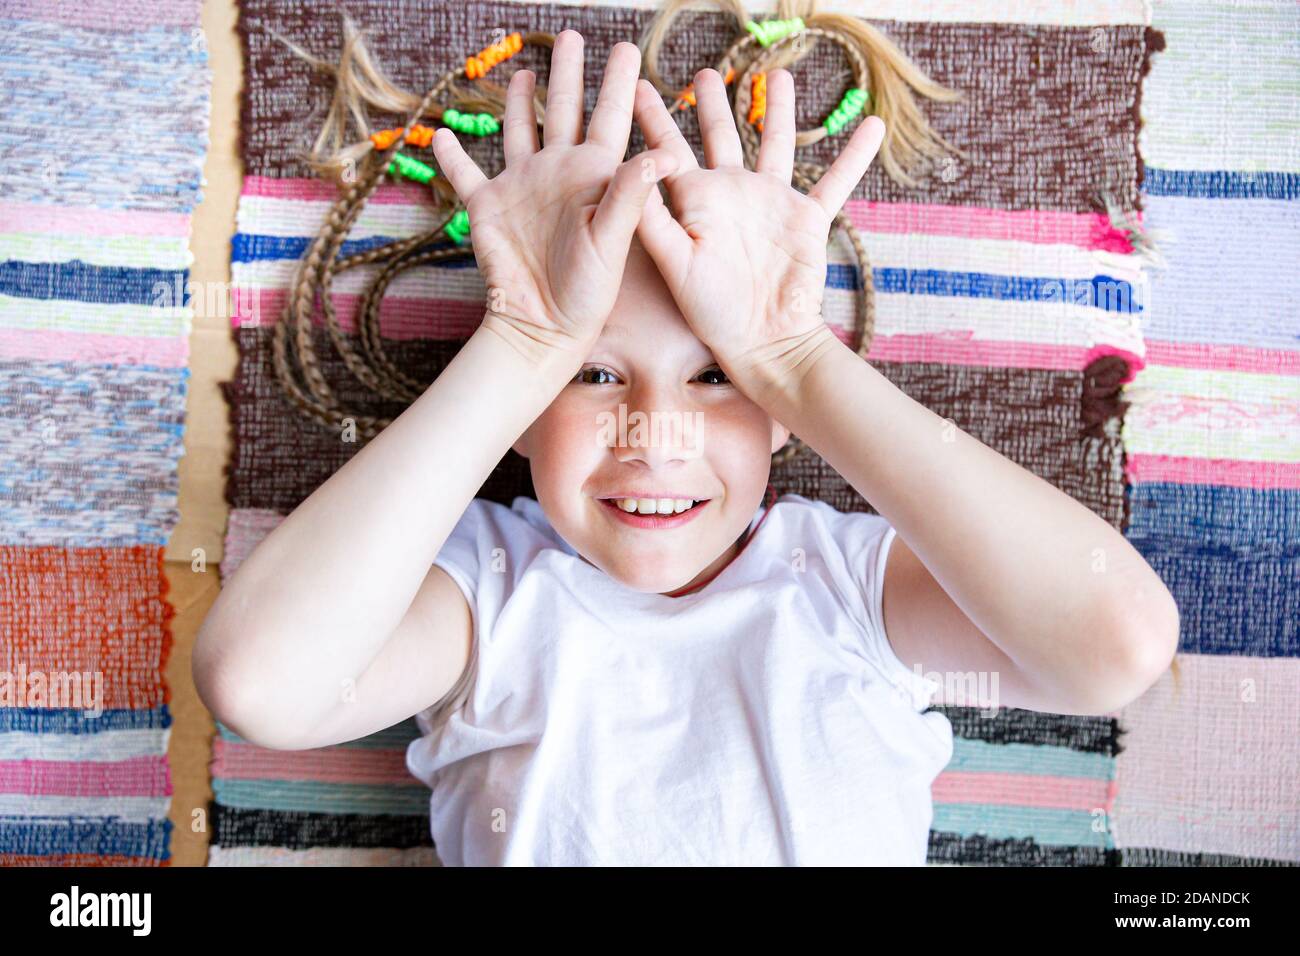 Un enfant caucasien, une fille gaie avec des picots, se trouve sur le sol sur un tapis tissé rayé, sourires, montre des palmiers ouverts avec les doigts écartés. Gros plan sur la Banque D'Images